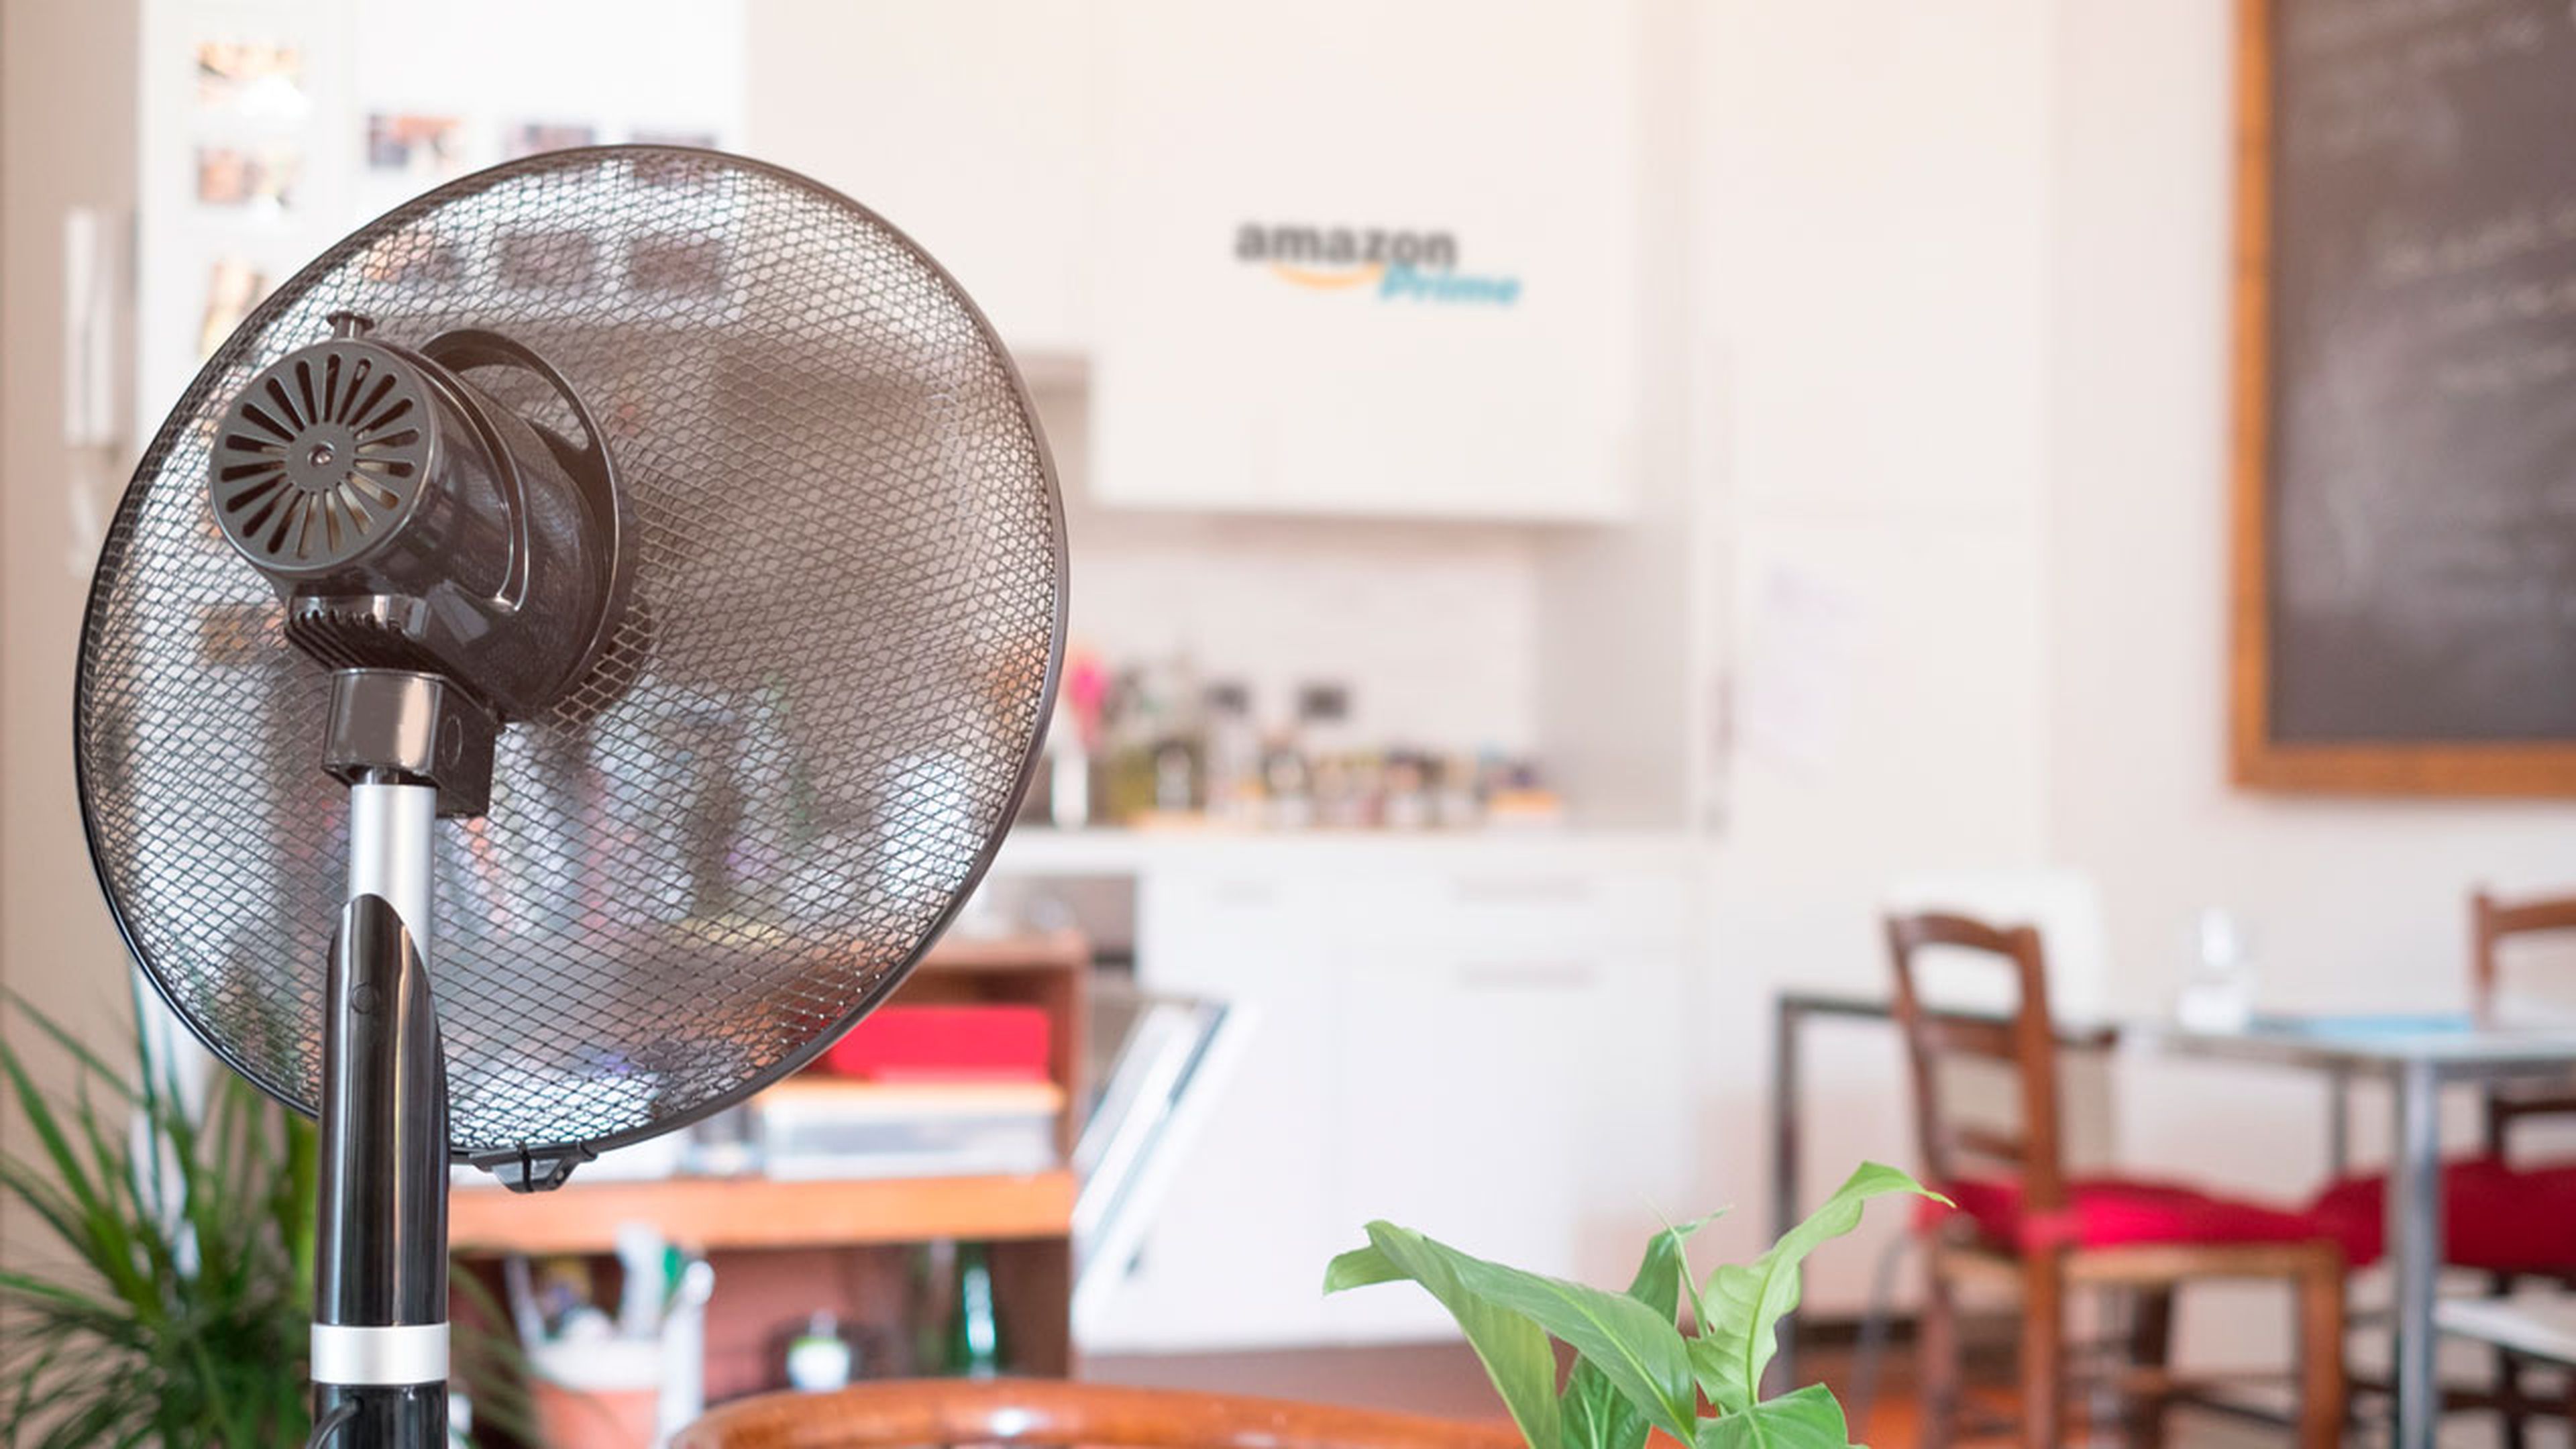 Los 7 ventiladores por menos de 100 euros más vendidos en Amazon